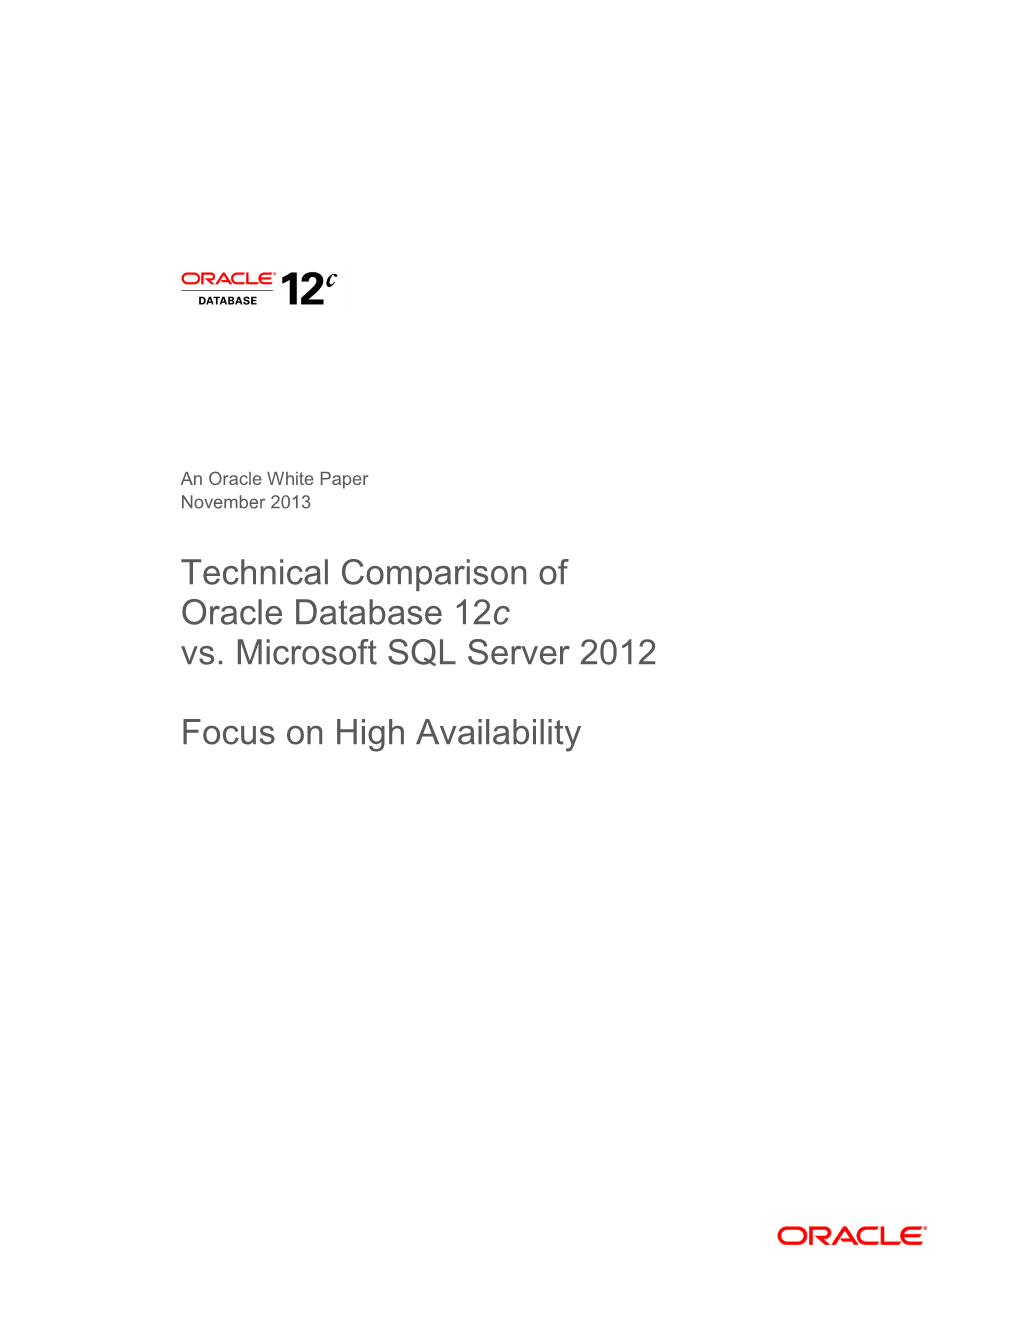 Oracle Database Vs. Microsoft SQL Server